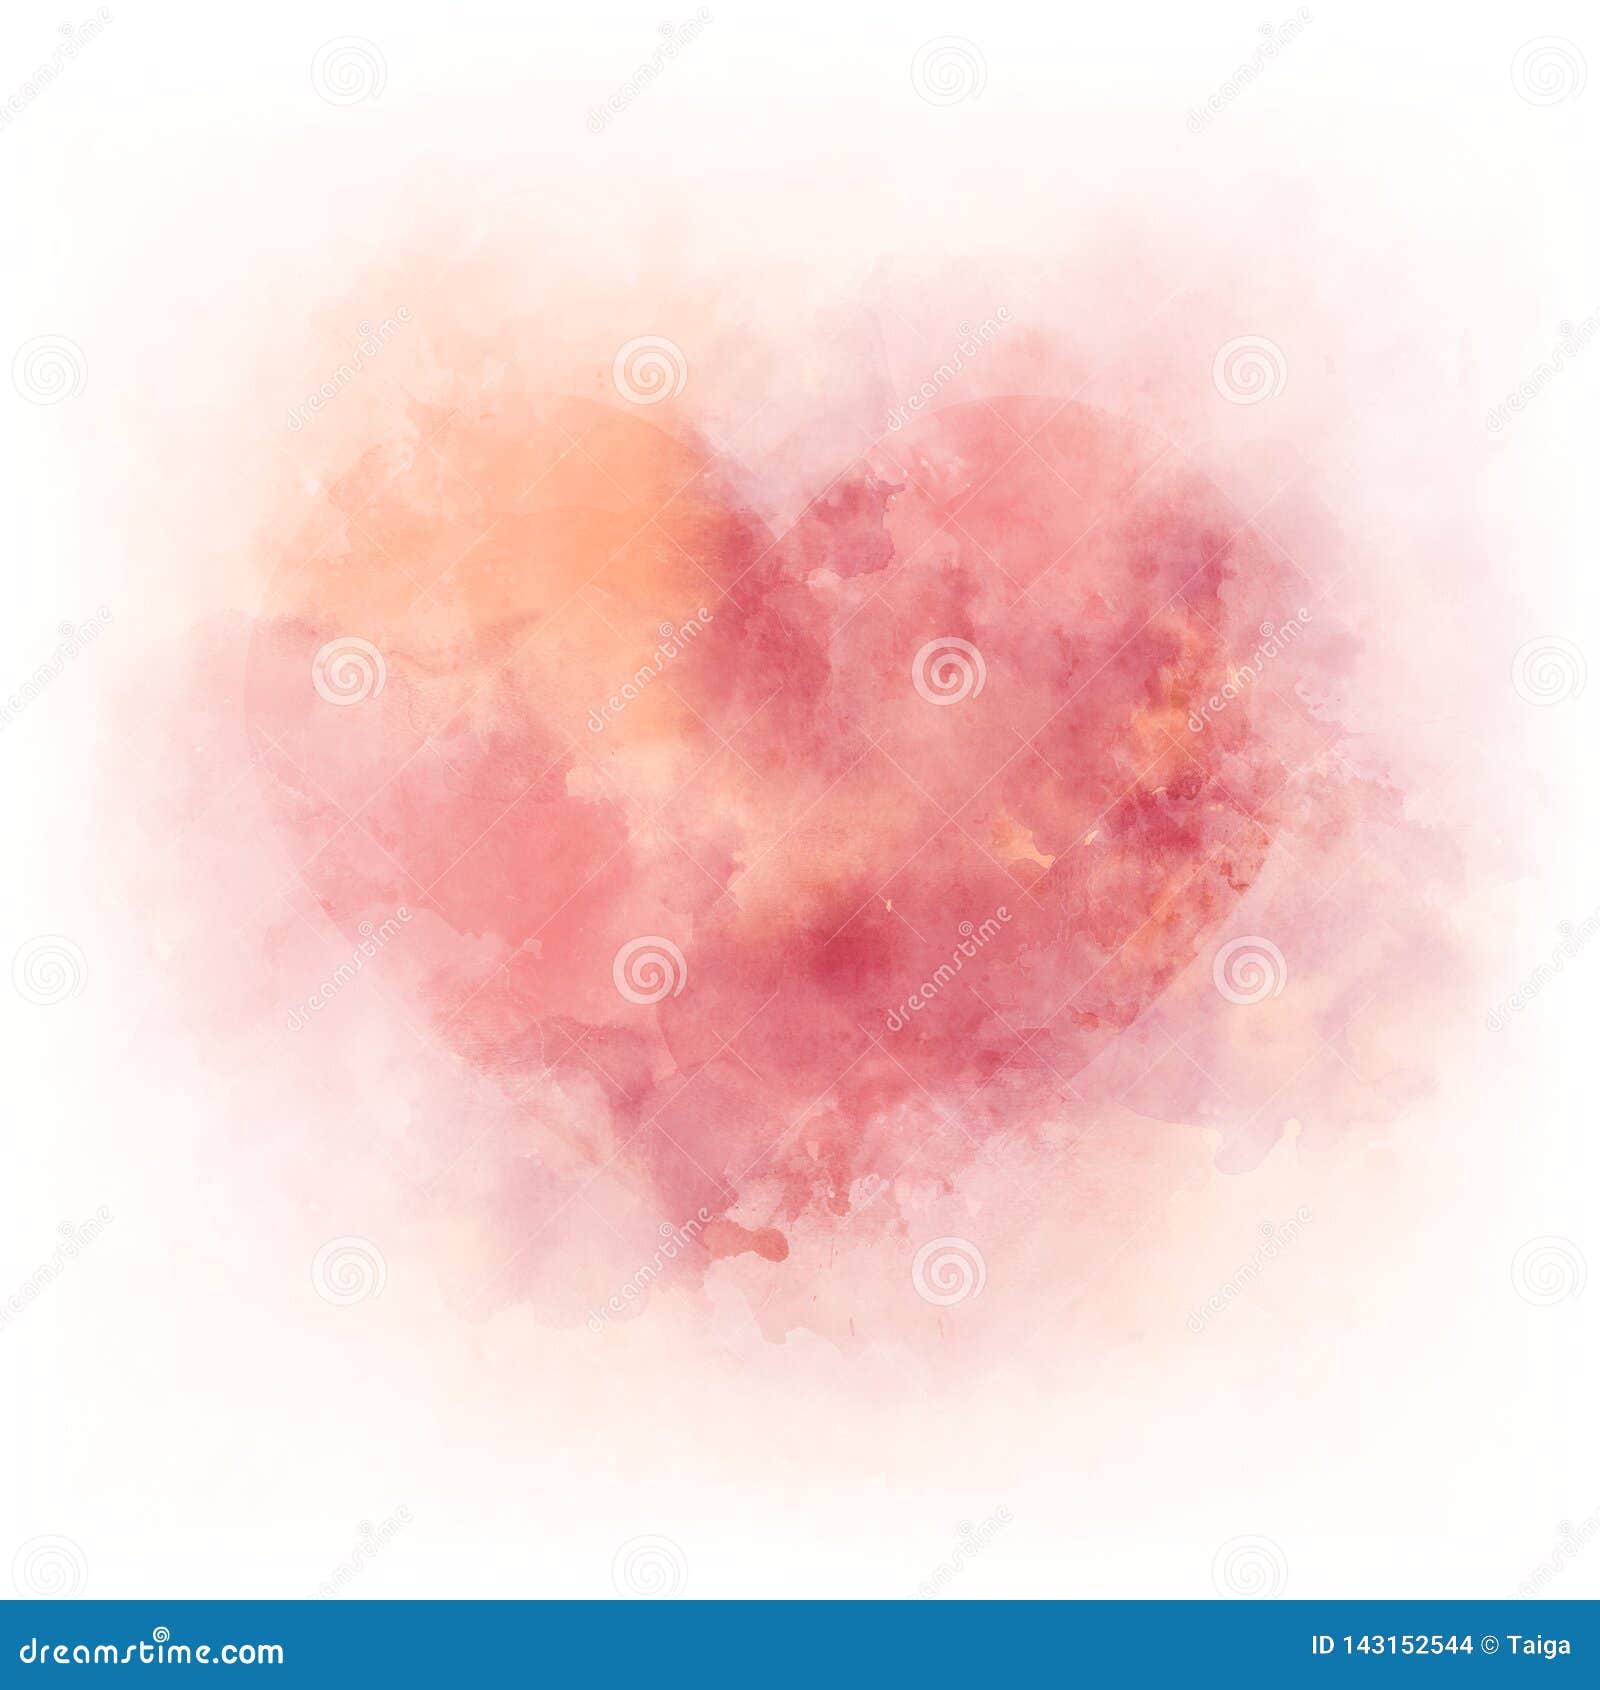 gentle pink watercolor heart - romantic ald love 